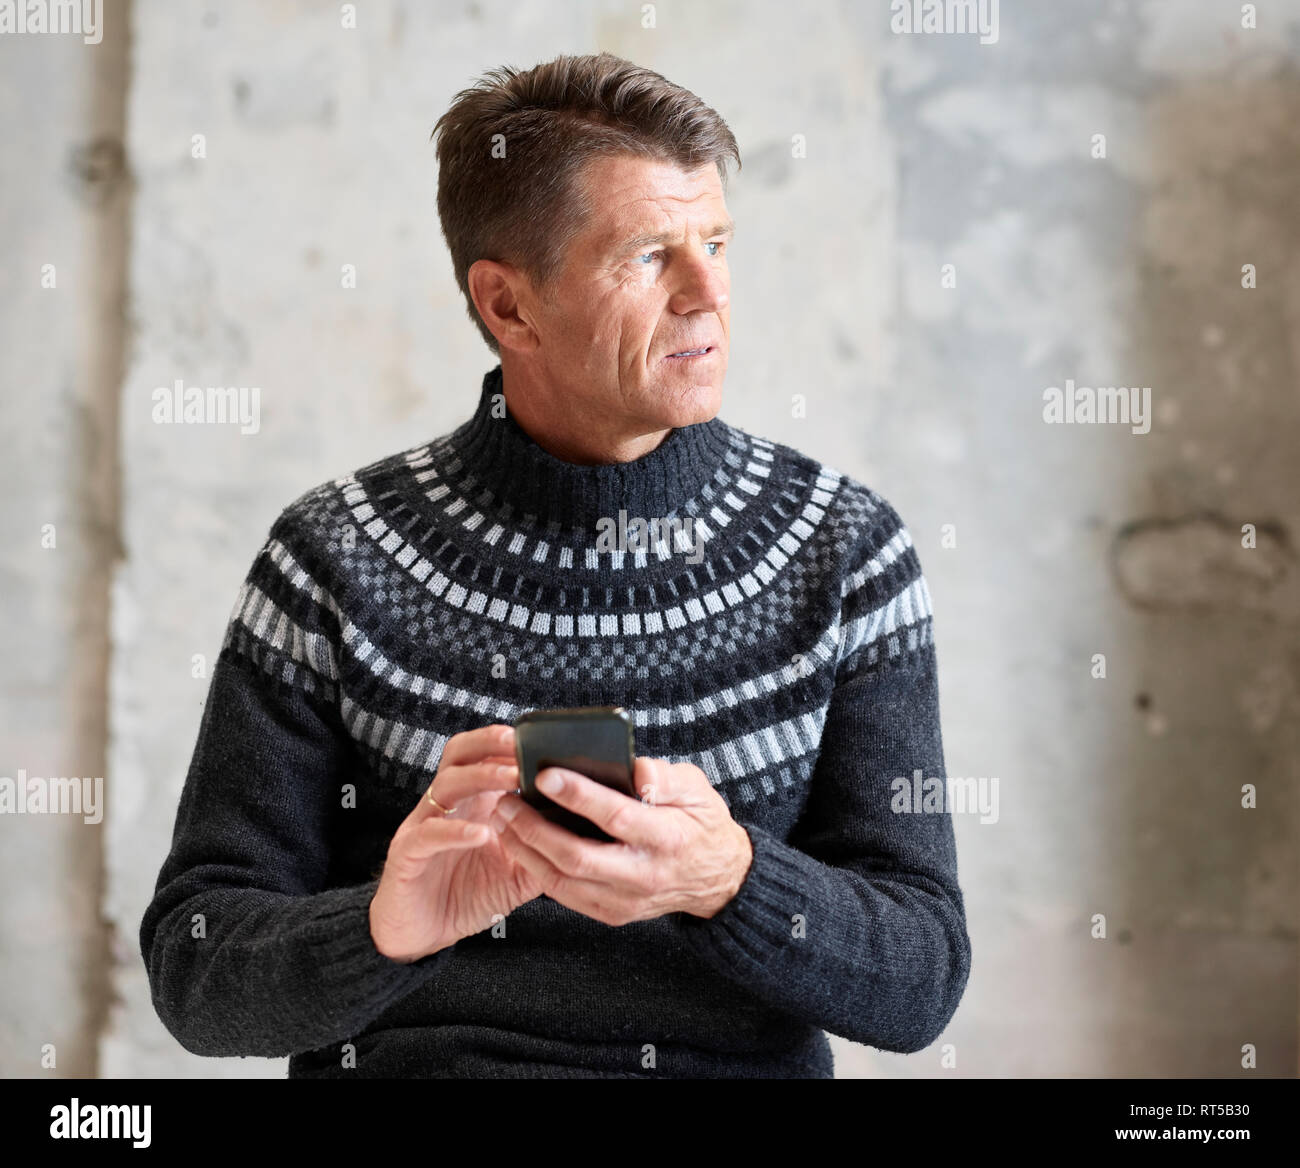 Suéteres suéteres fotografías e imágenes de alta resolución - Alamy